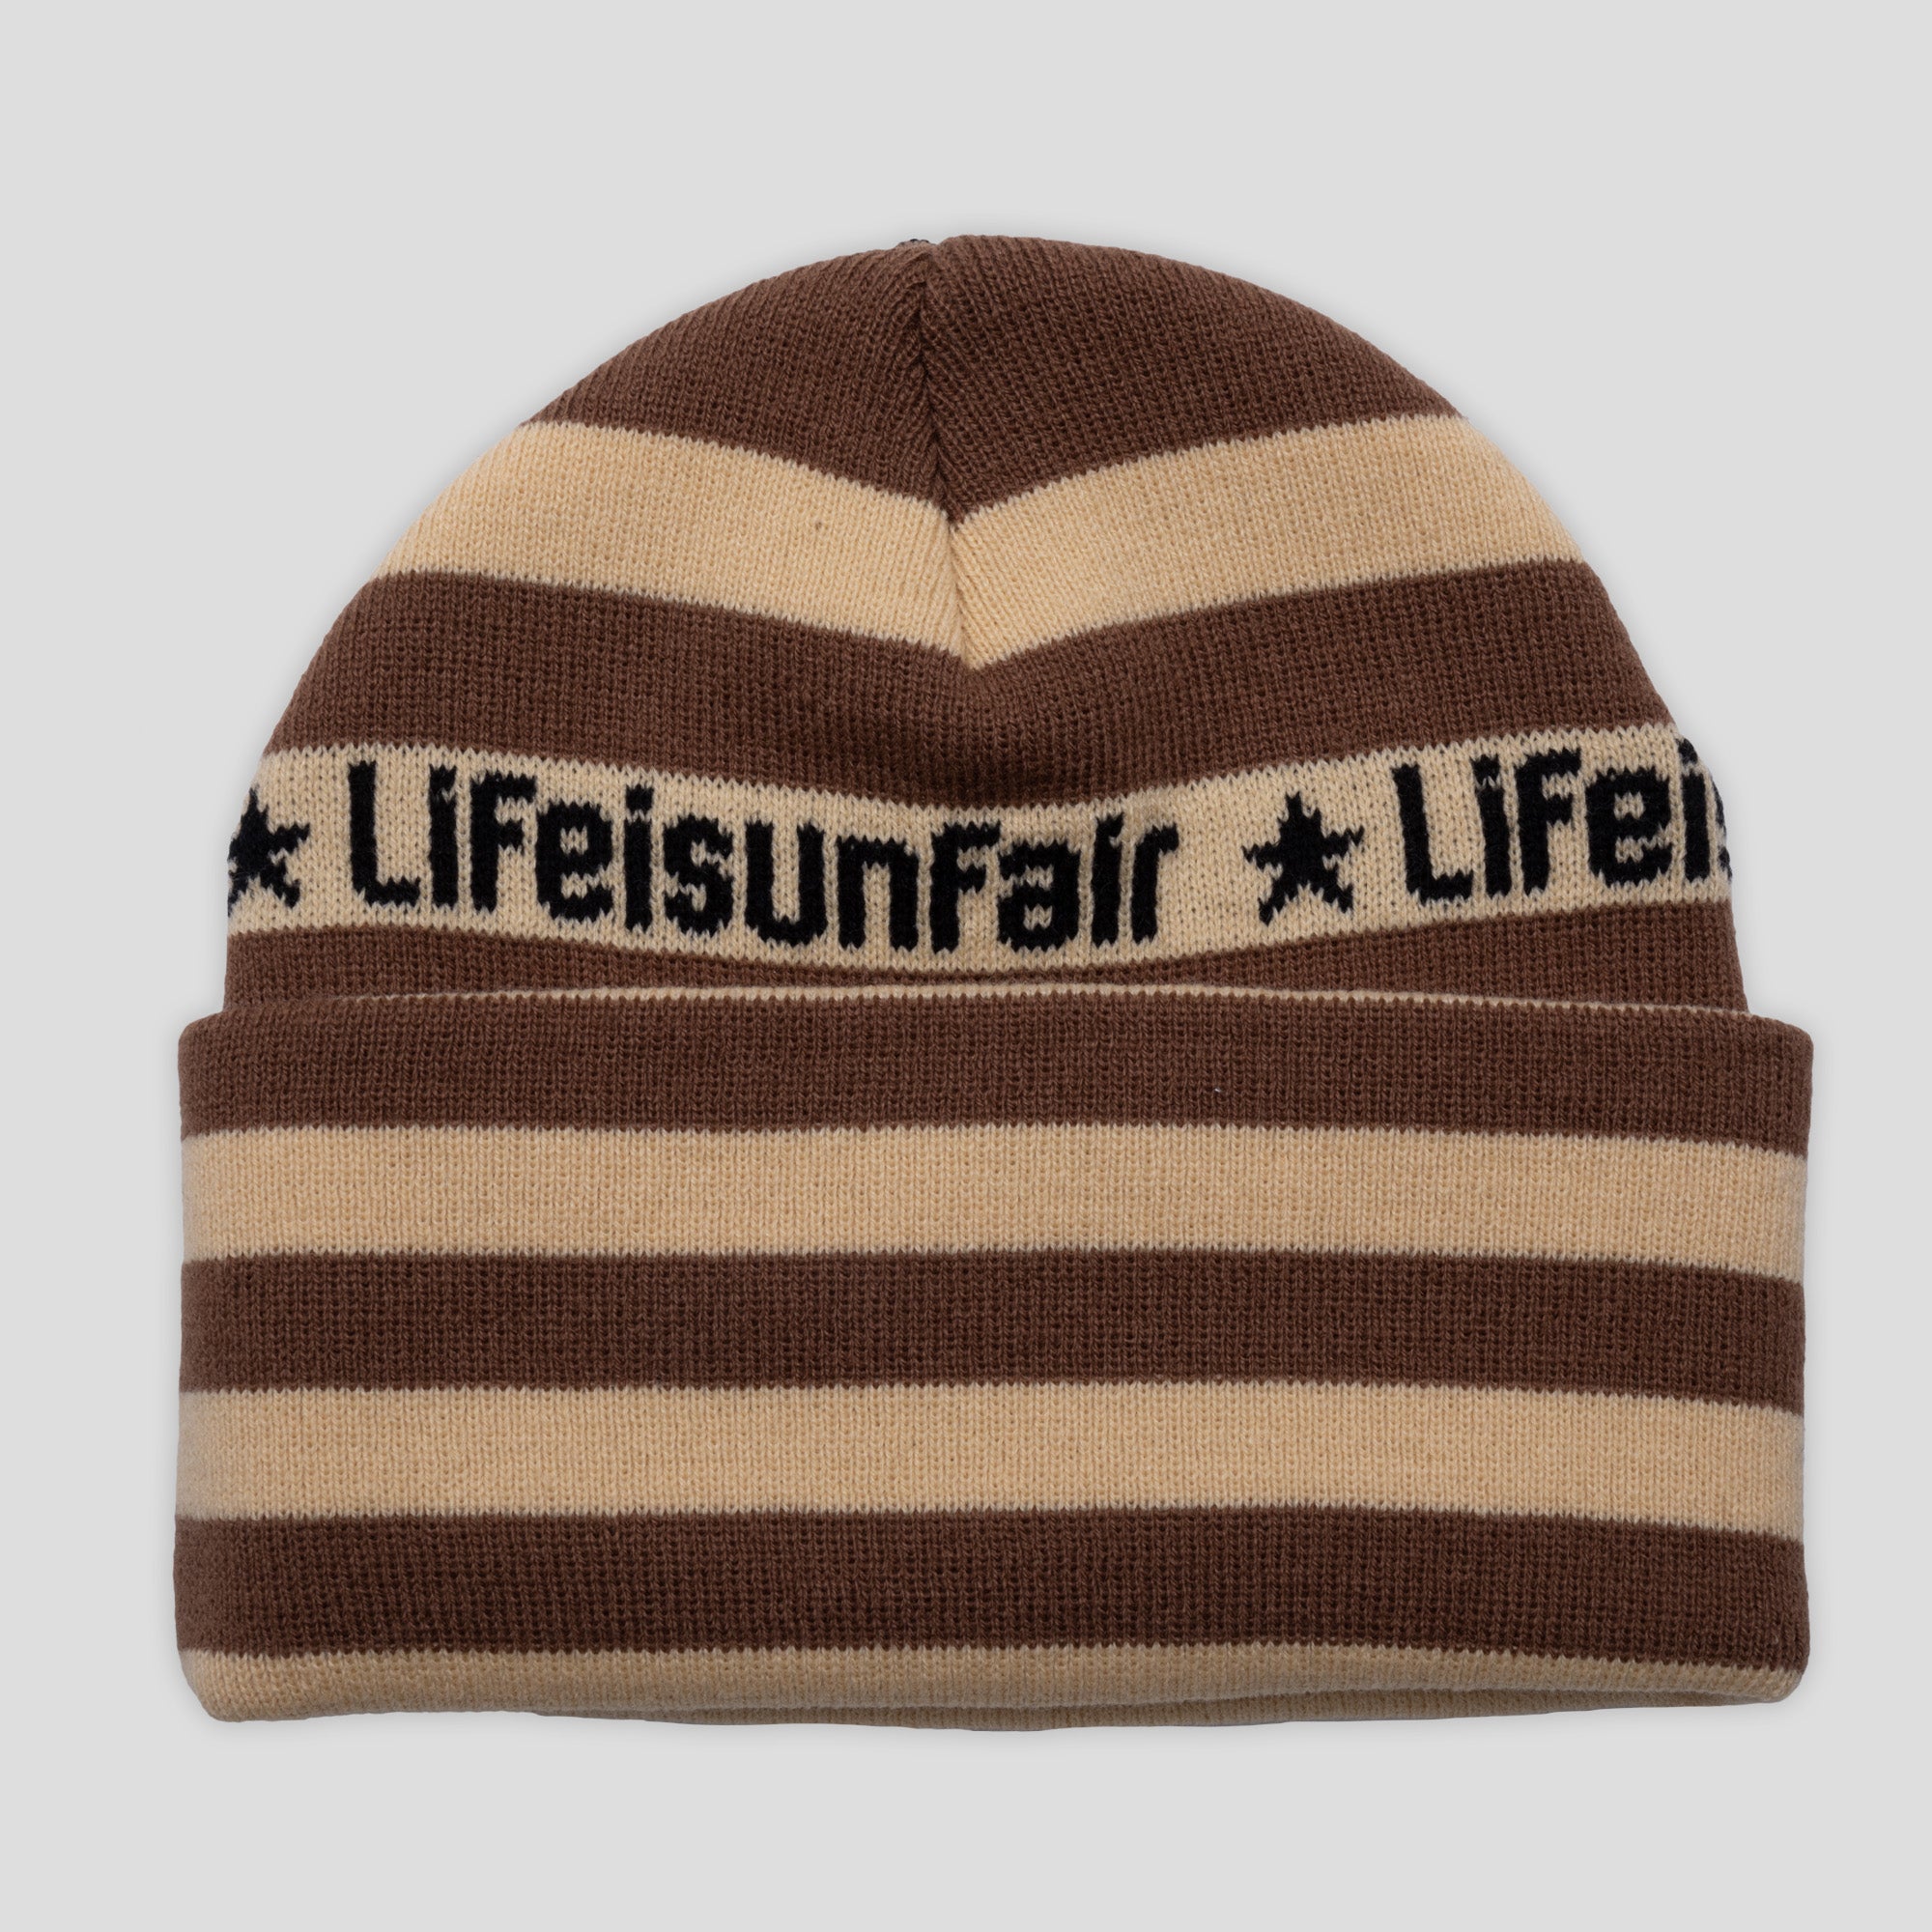 Life is Unfair Not Ok Beanie - Tan / Brown